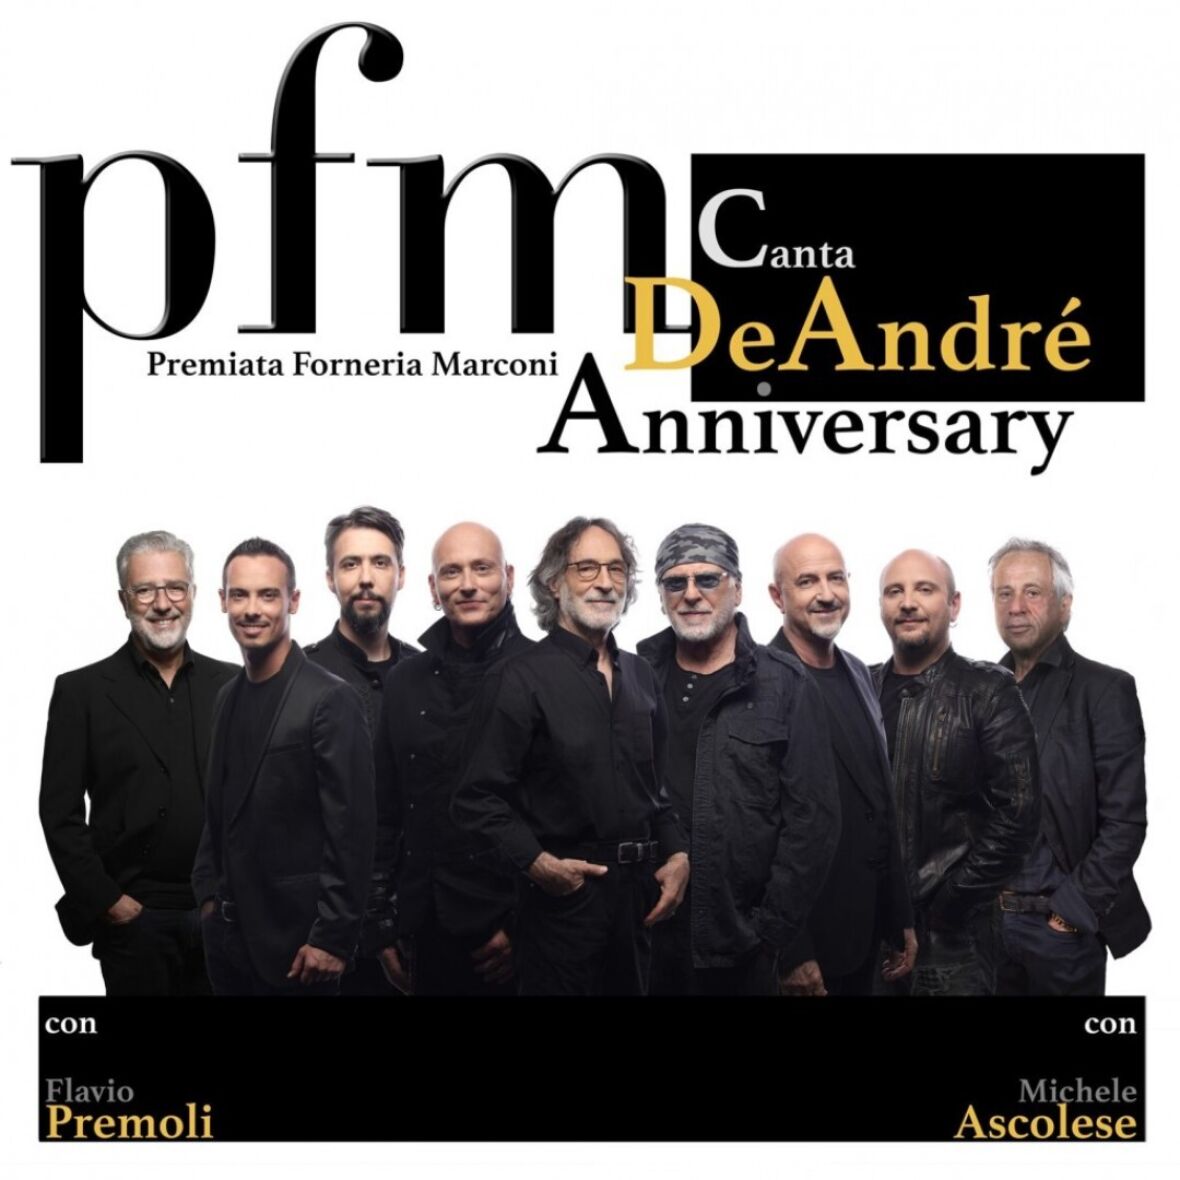 PFM Canta De André